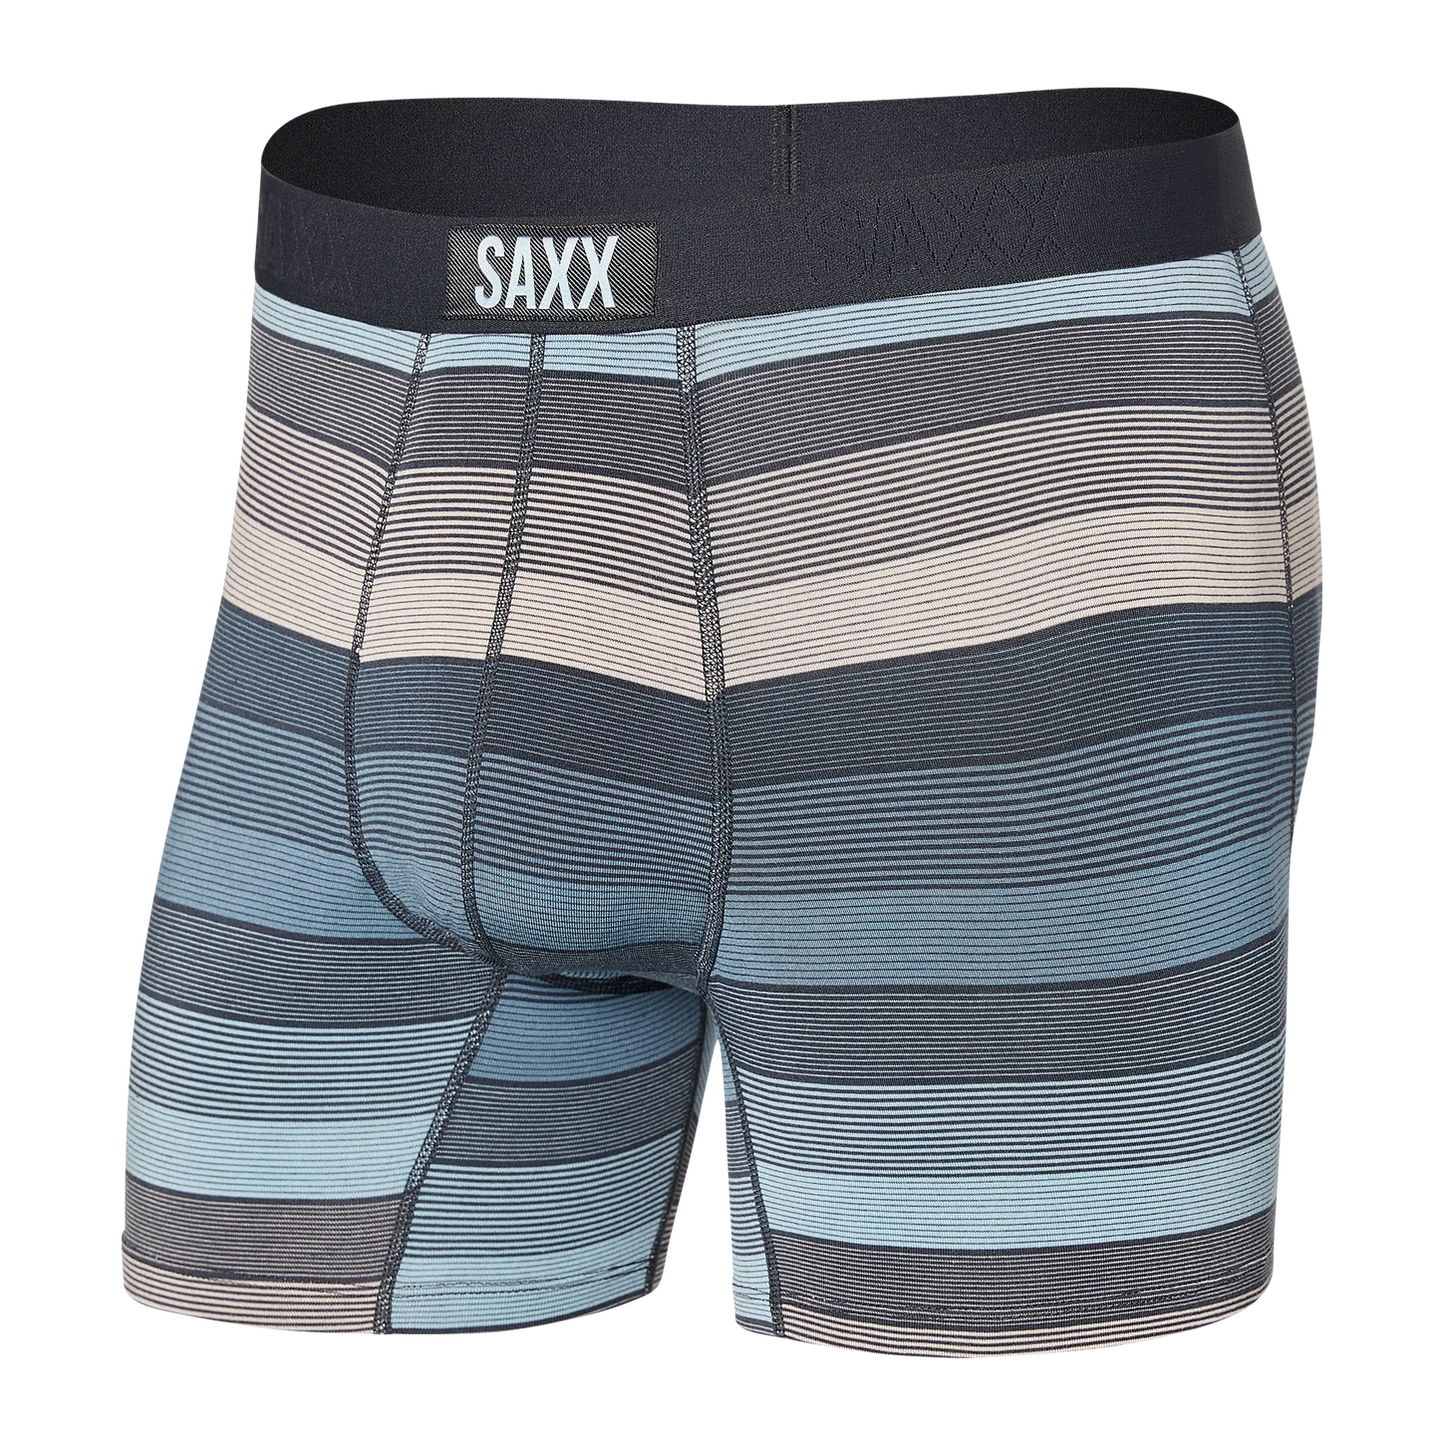 Vibe Boxer Brief Underwear Saxx HSB S 